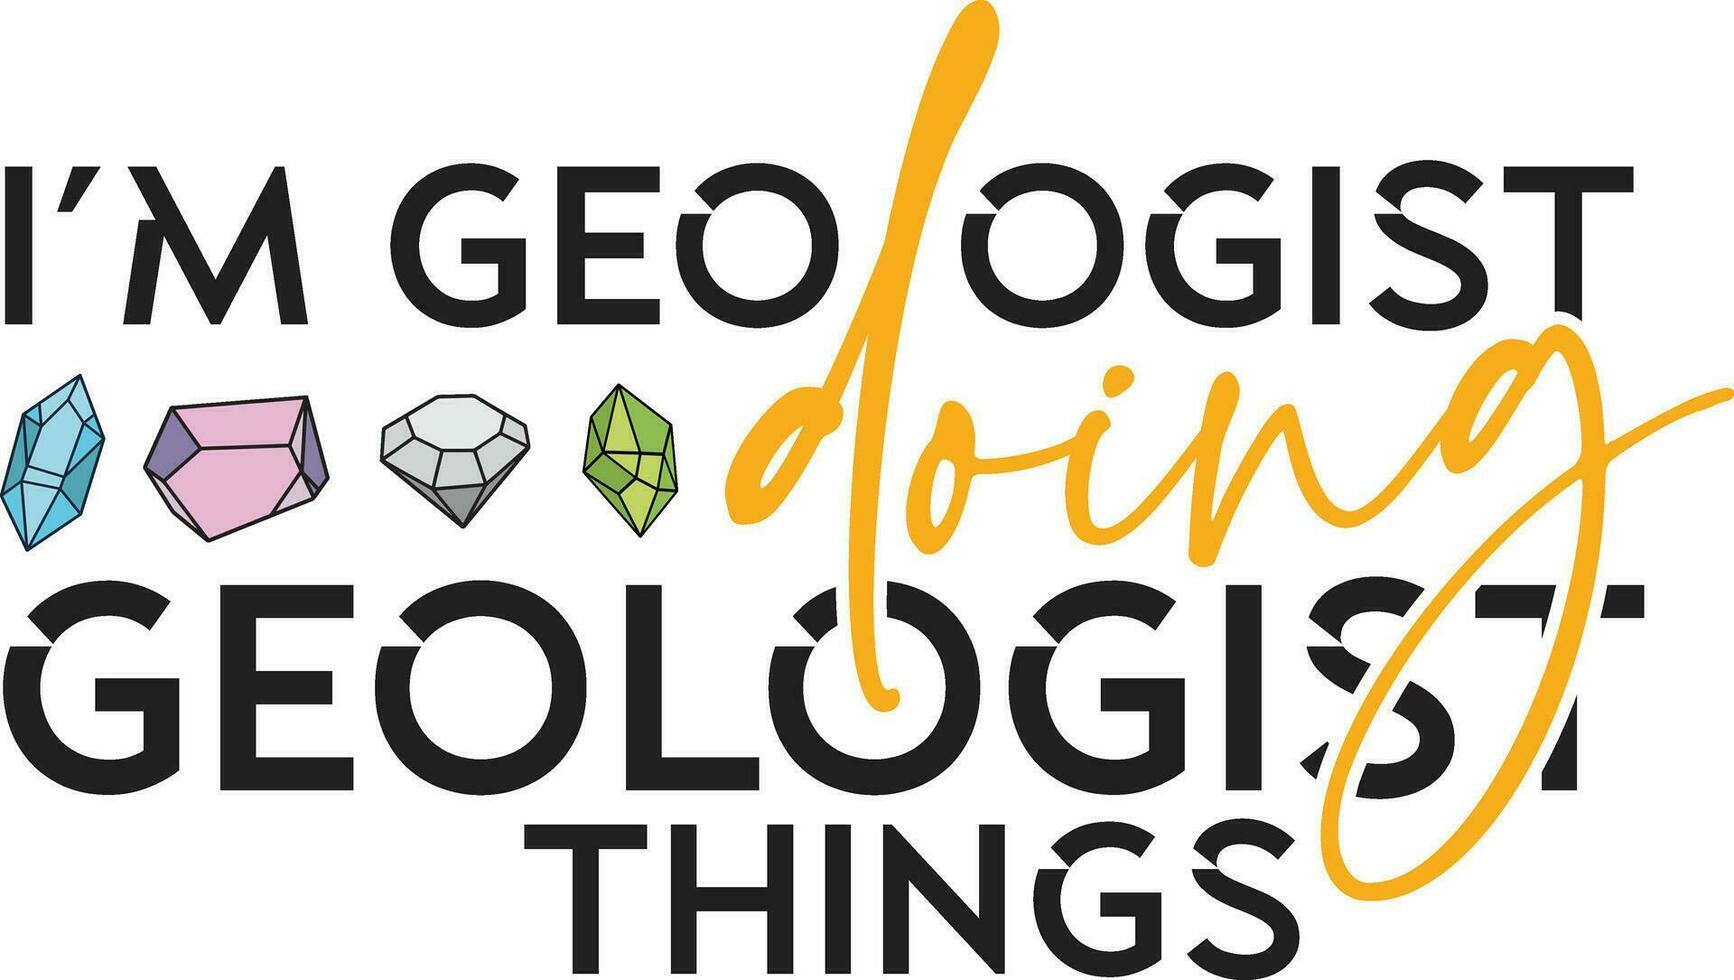 jag är geolog håller på med geolog saker. design för geologi älskare vektor